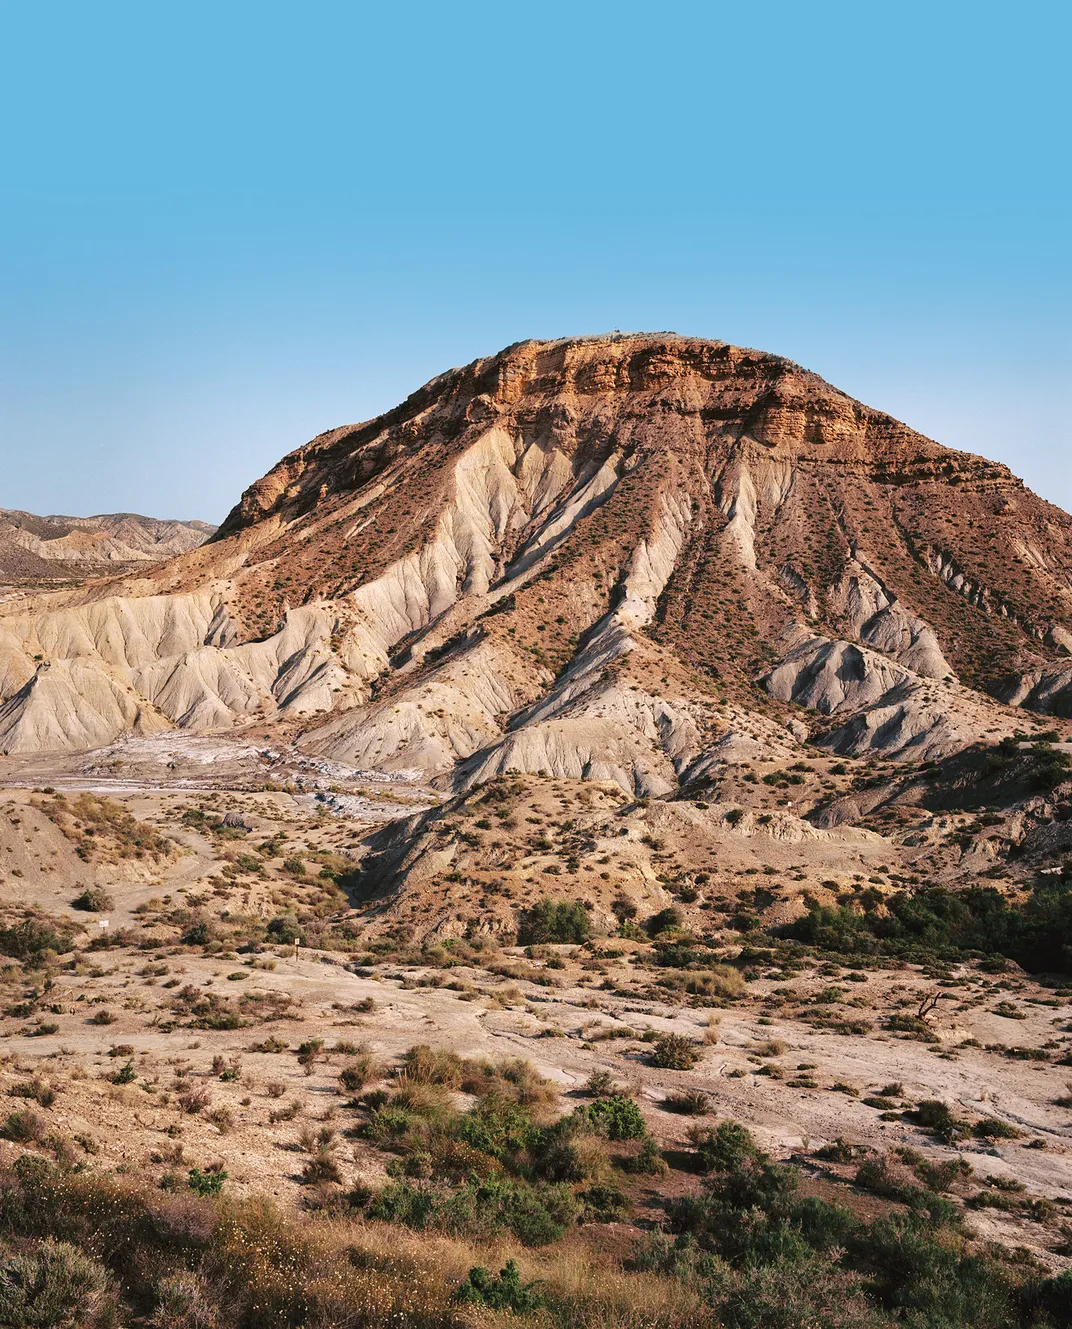 A mountain in a desert region